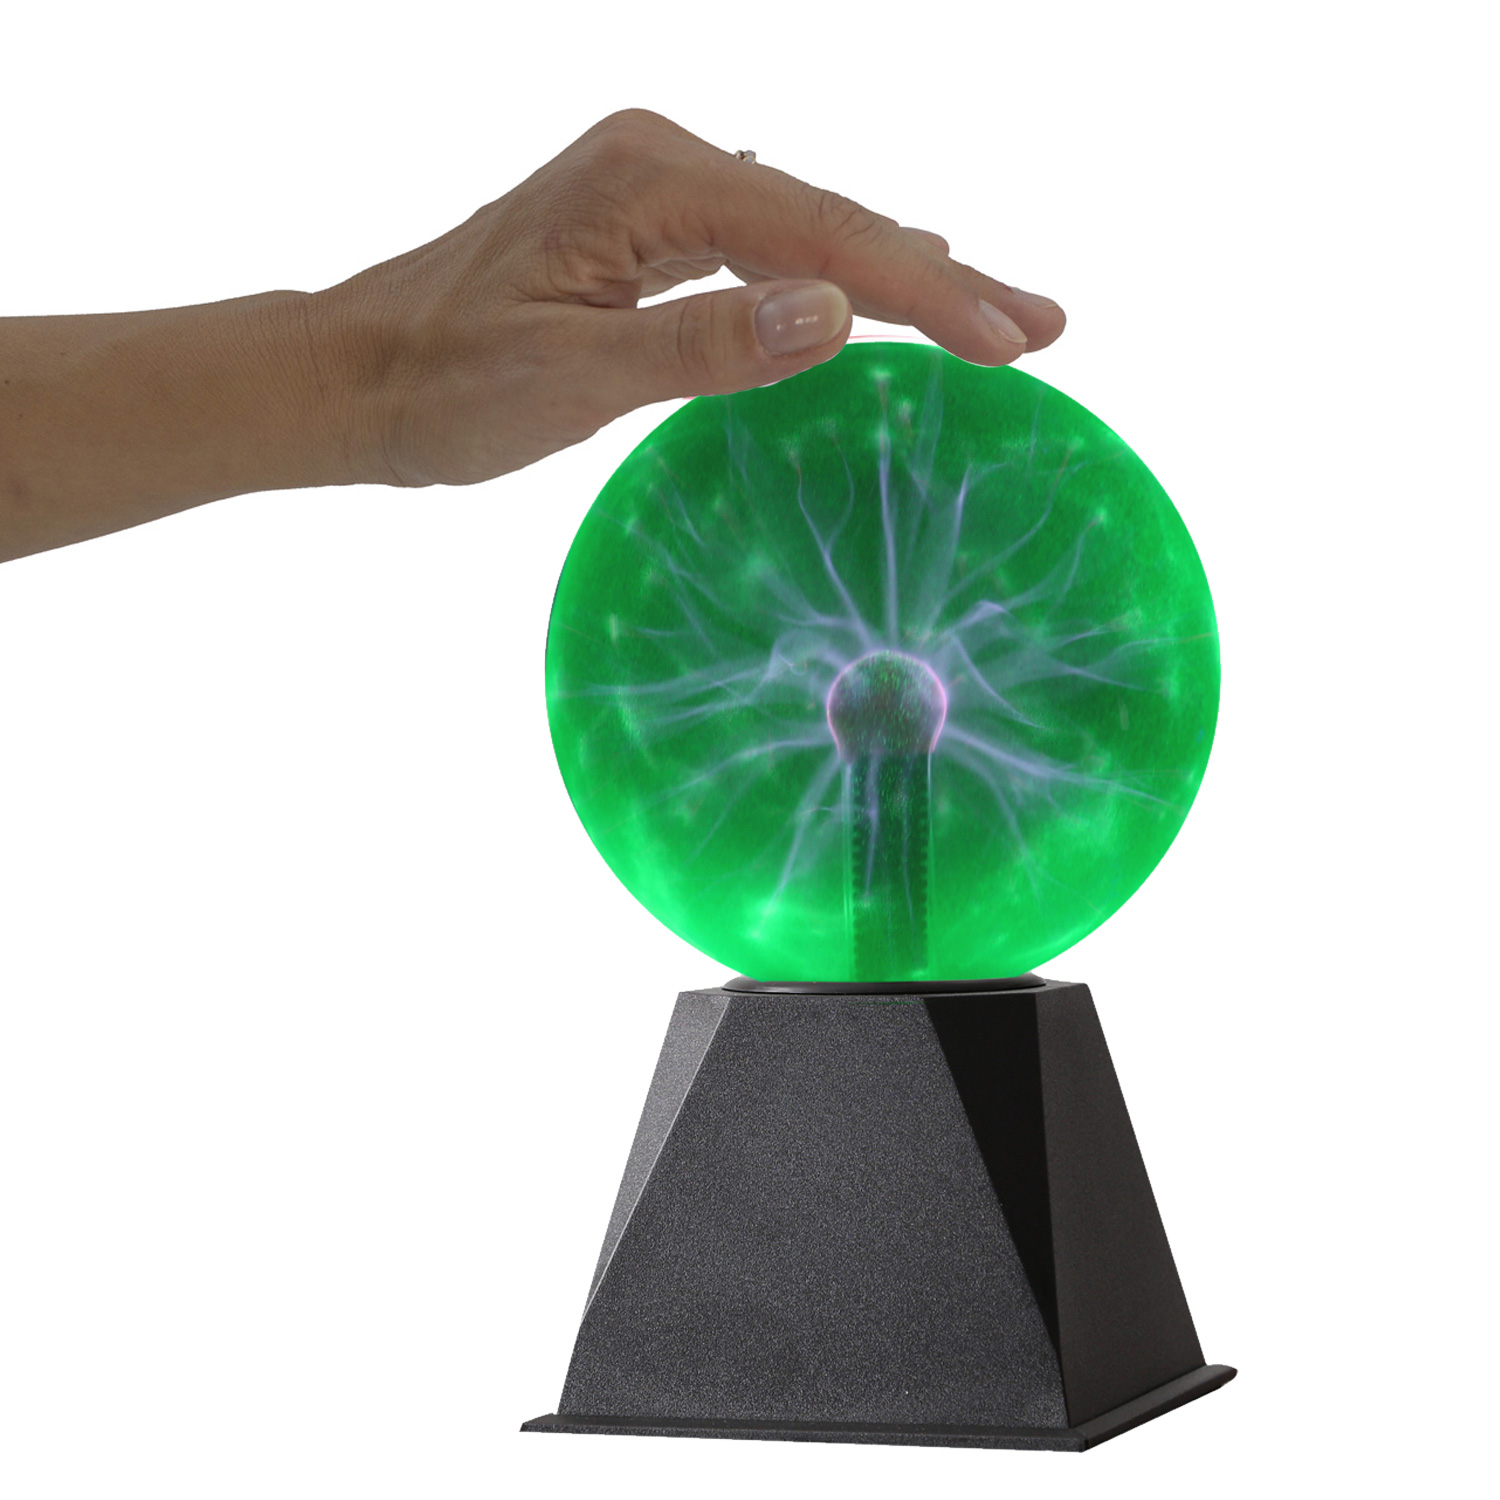 Plasmakugel zuckend- grüne Blitz-Show Automatikbetrieb oder Musiksteuerung - 15cm Kugel